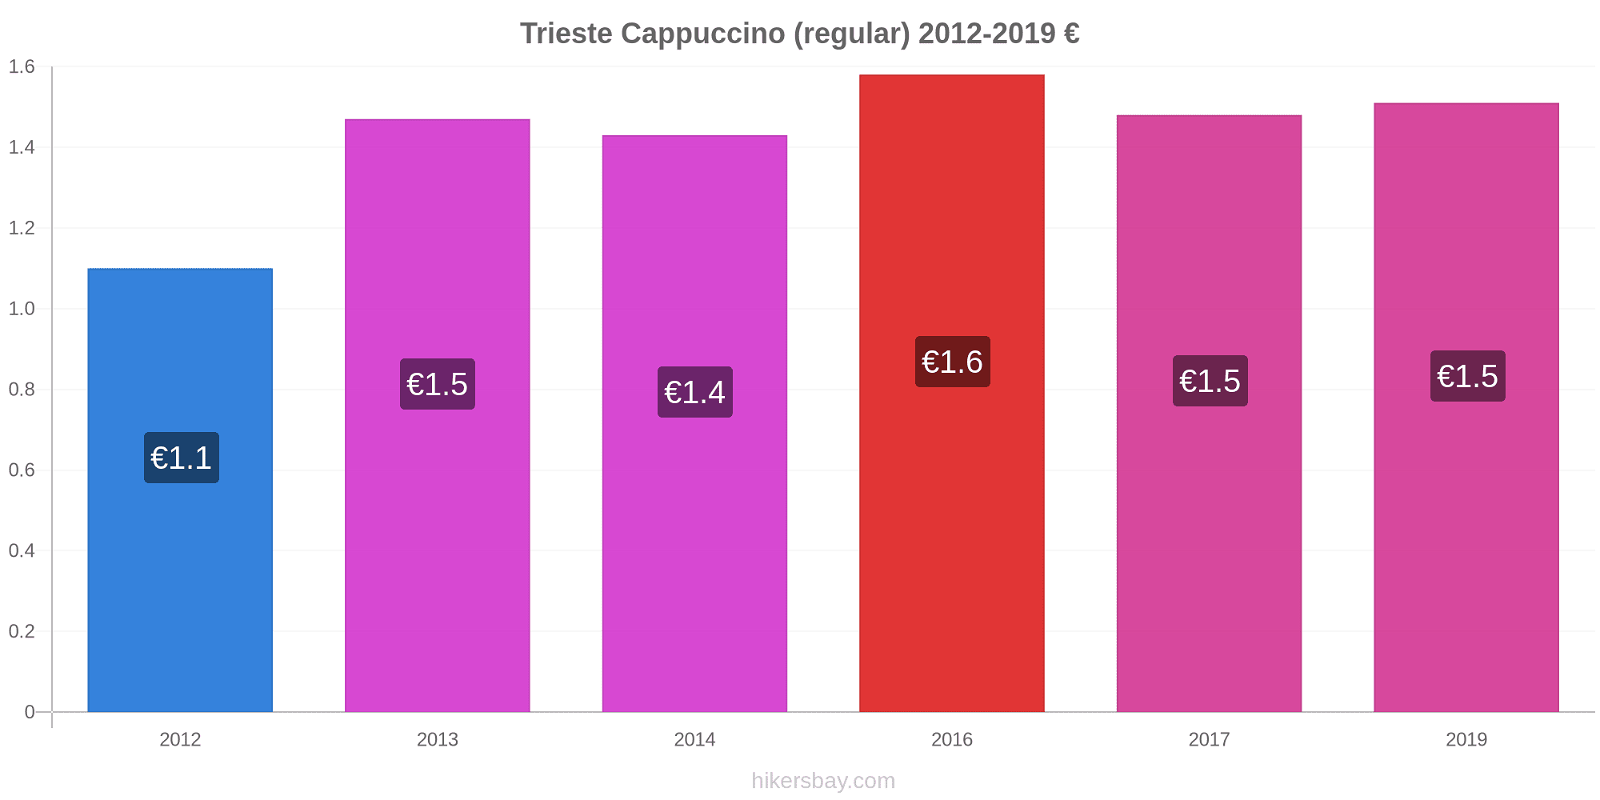 Trieste variação de preço Capuccino (regular) hikersbay.com